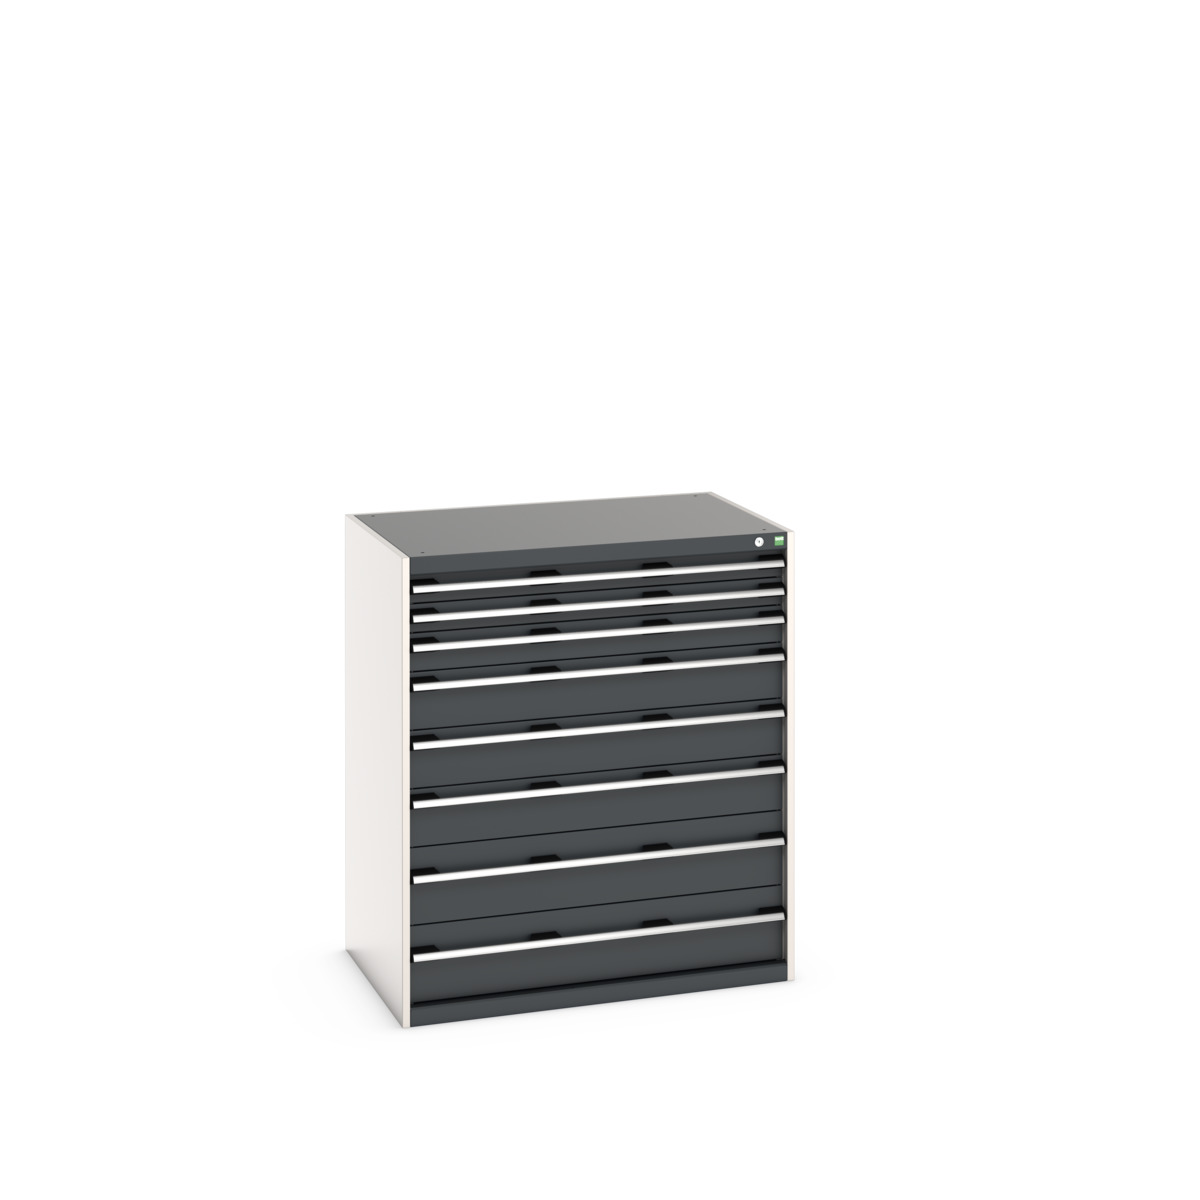 40029032.19V - cubio drawer cabinet